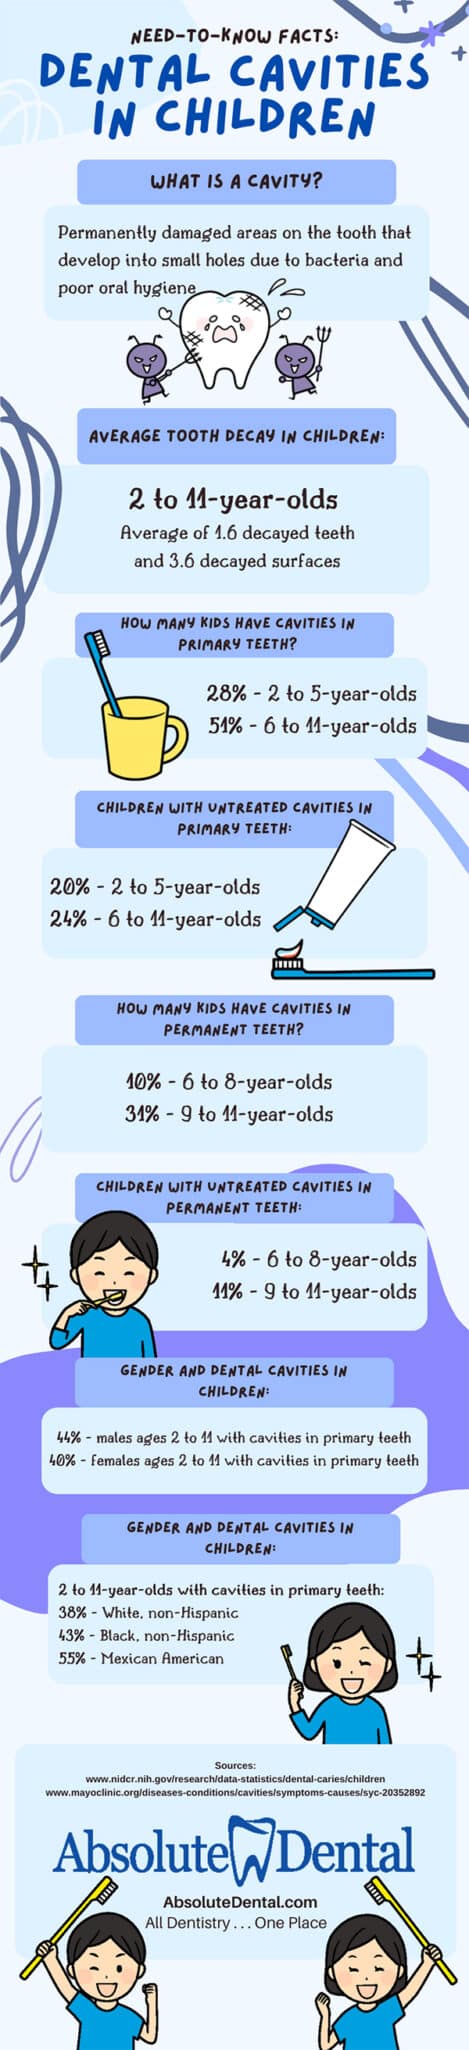 Dental cavities in children infographic